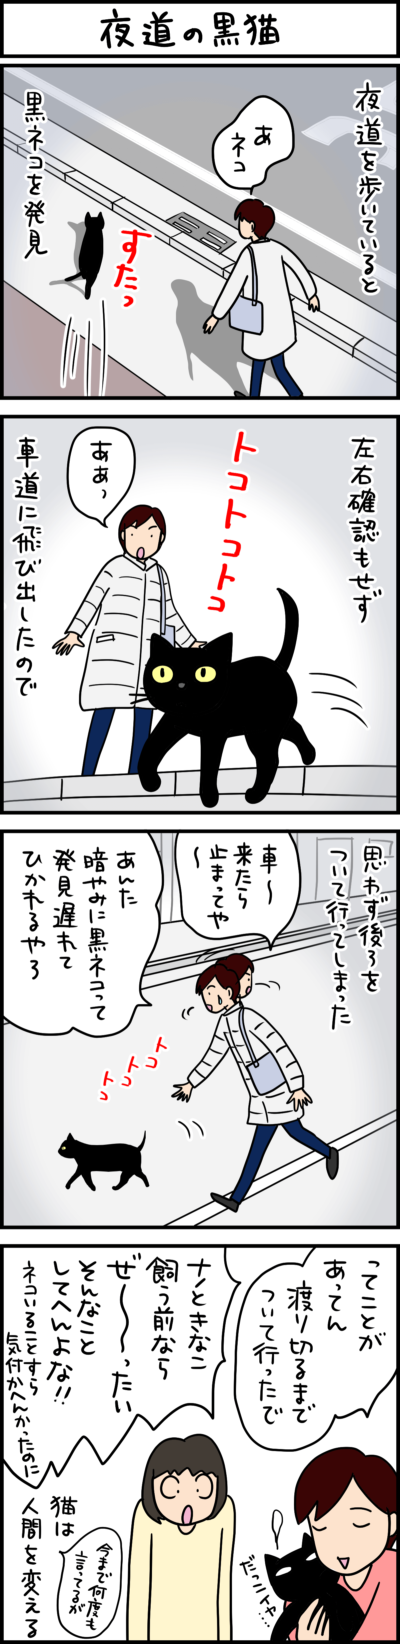 猫の4コマ漫画